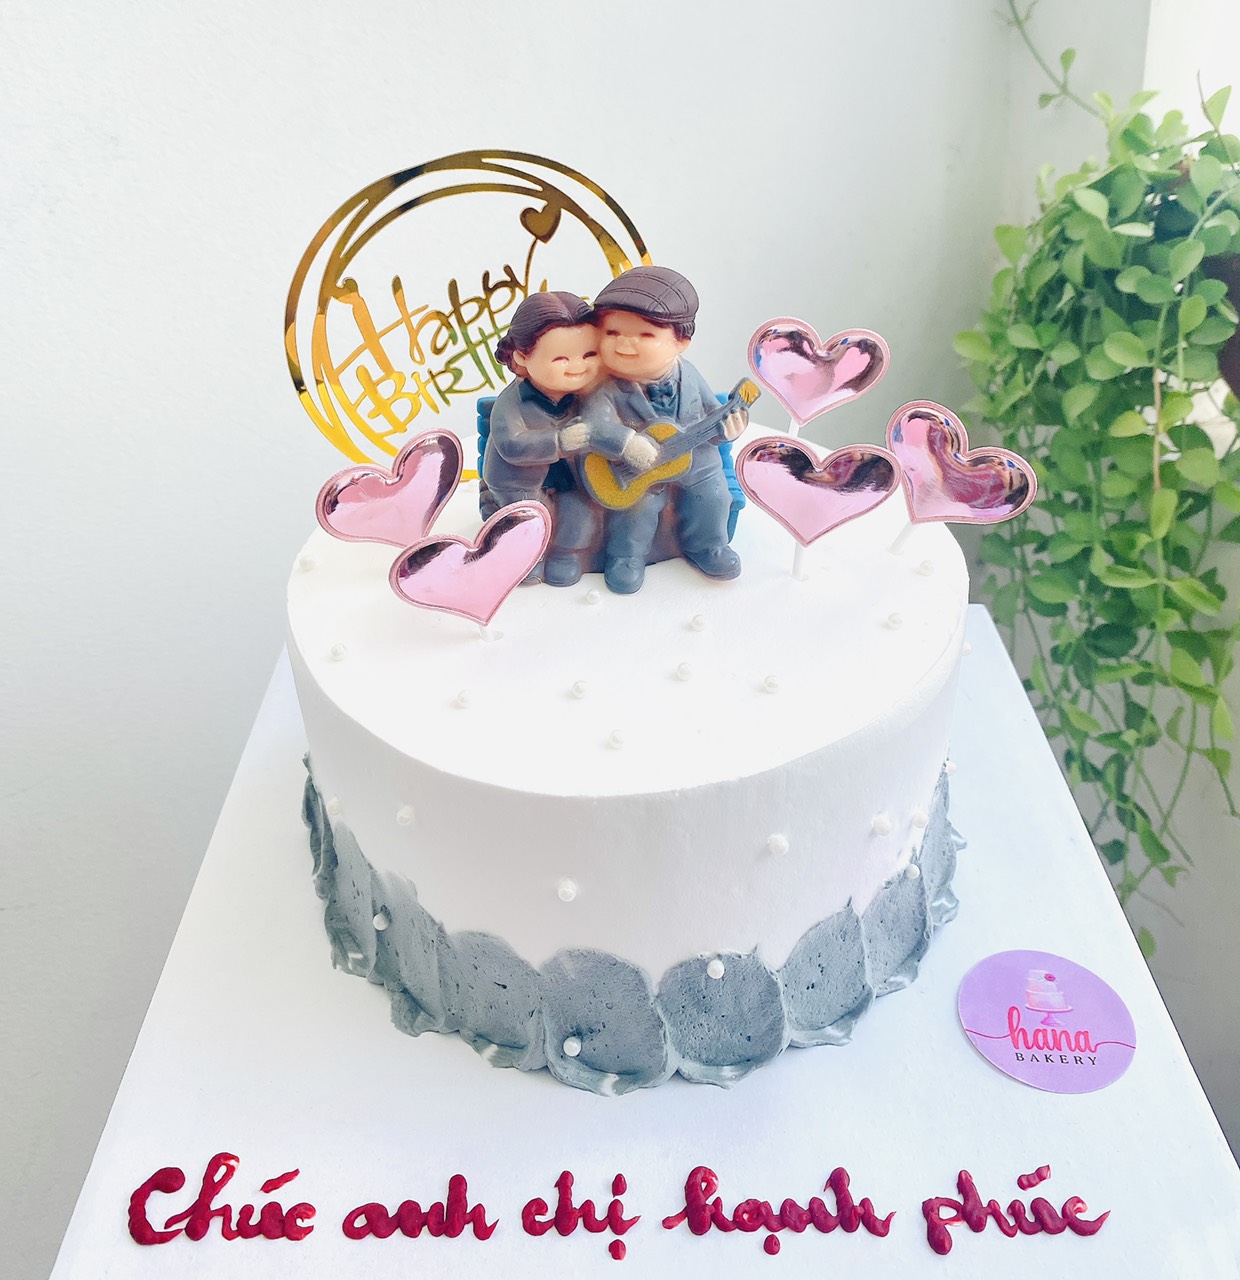 Bánh sinh nhật in hình ông bà dành cho tiệc mừng thọ MS 2D-0165 - Tiệm Bánh  Chon Chon